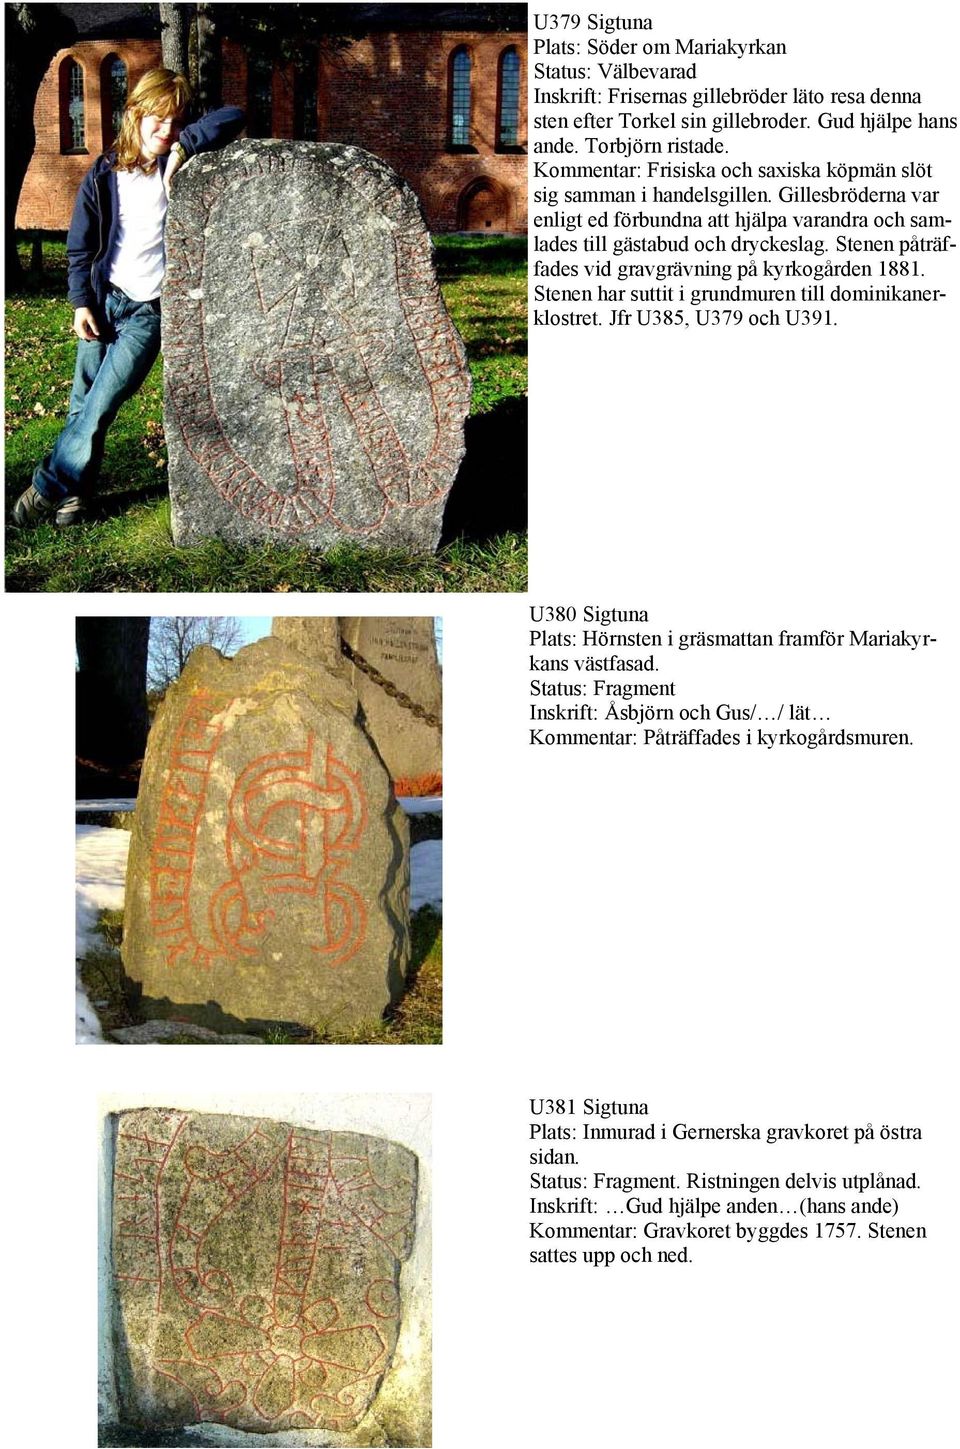 Stenen påträffades vid gravgrävning på kyrkogården 1881. Stenen har suttit i grundmuren till dominikanerklostret. Jfr U385, U379 och U391.